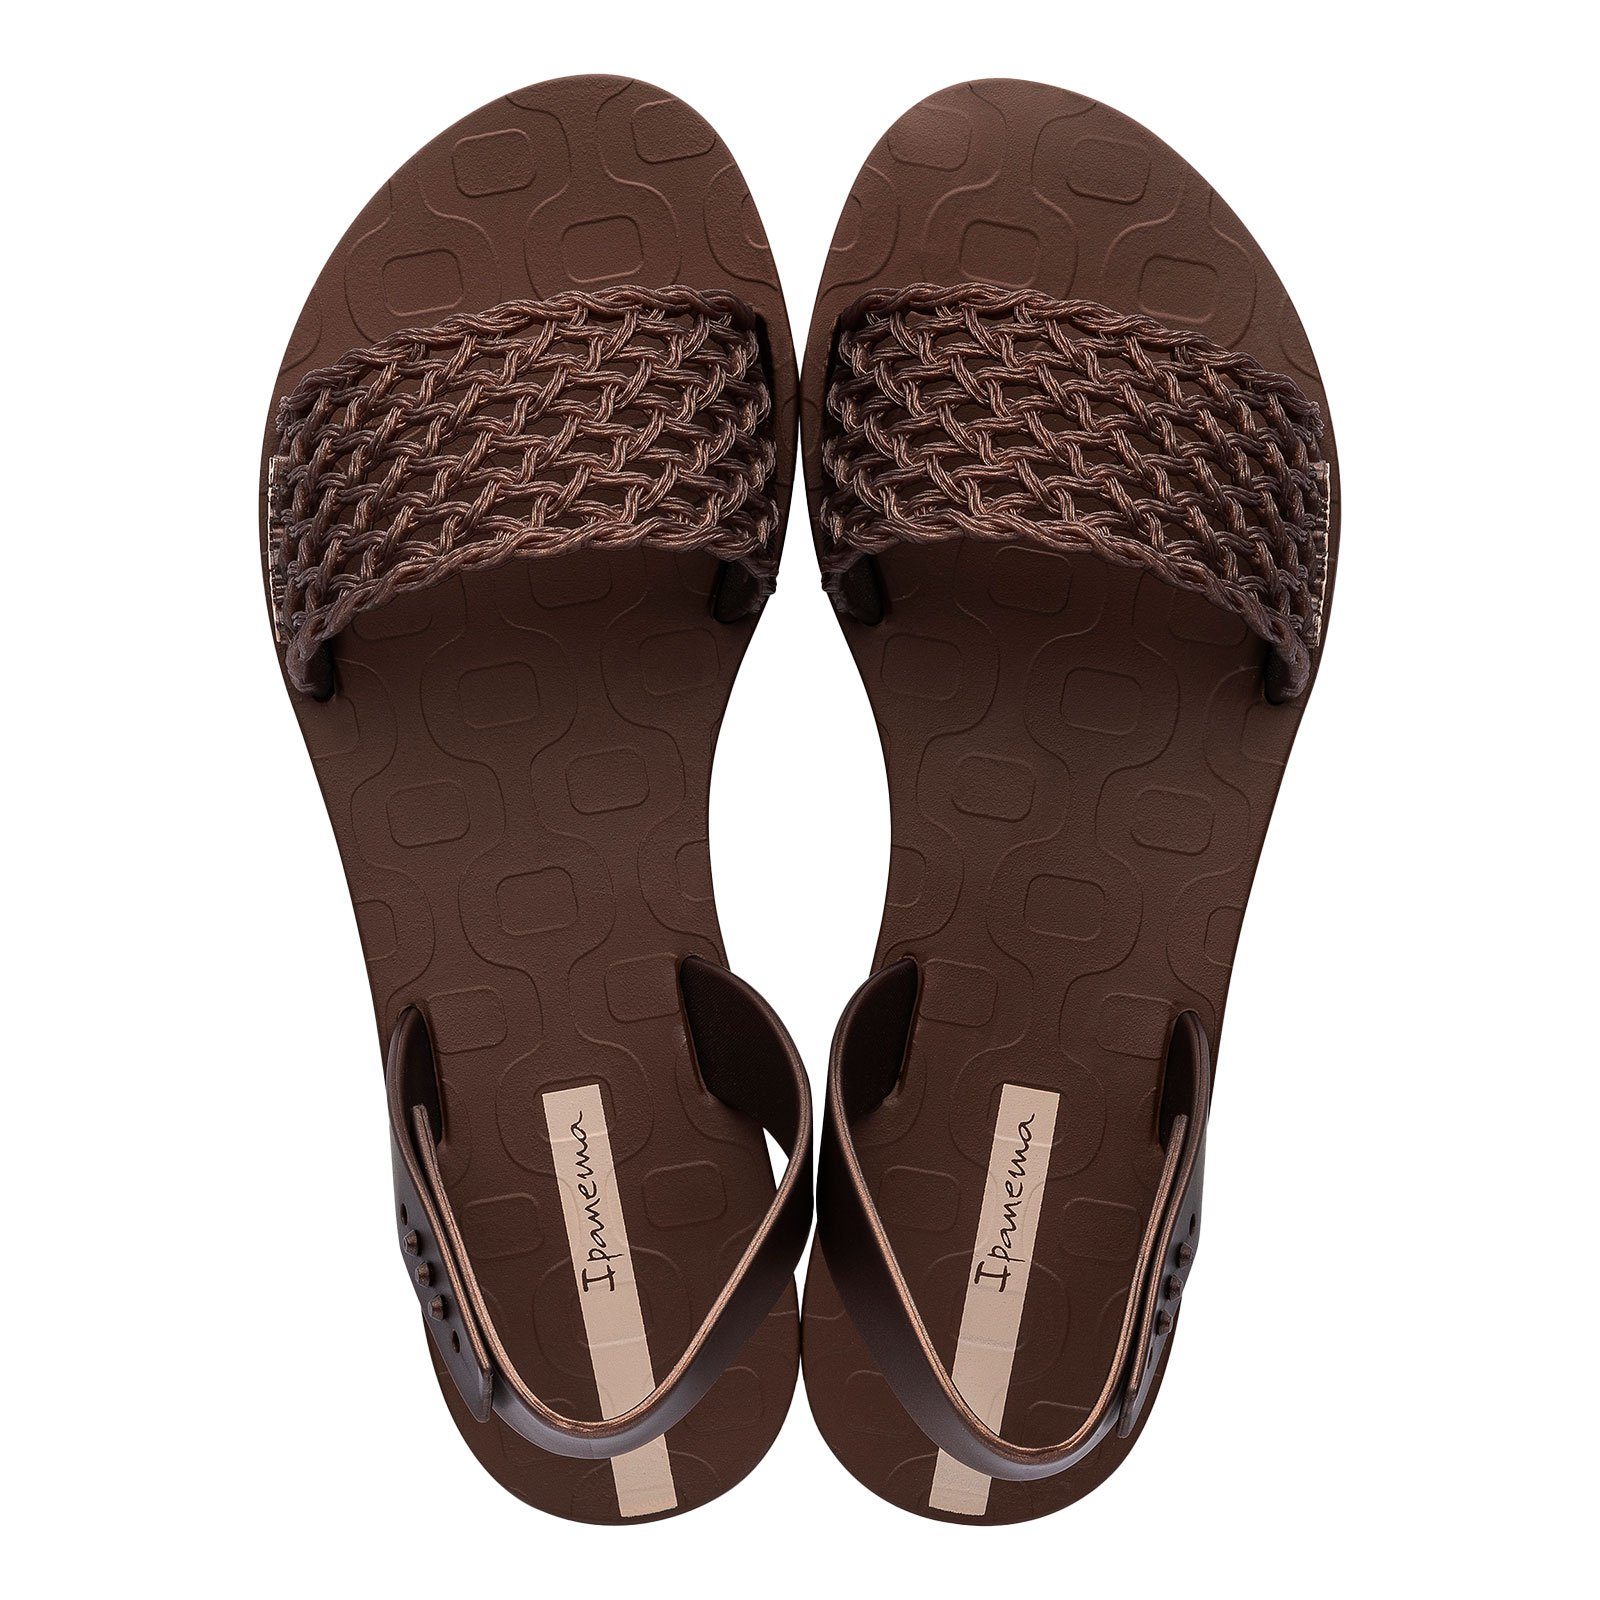 Ipanema Breezy Sandal Sandale mit Markenschriftzug auf der Innensohle AJ031 brown / bronze